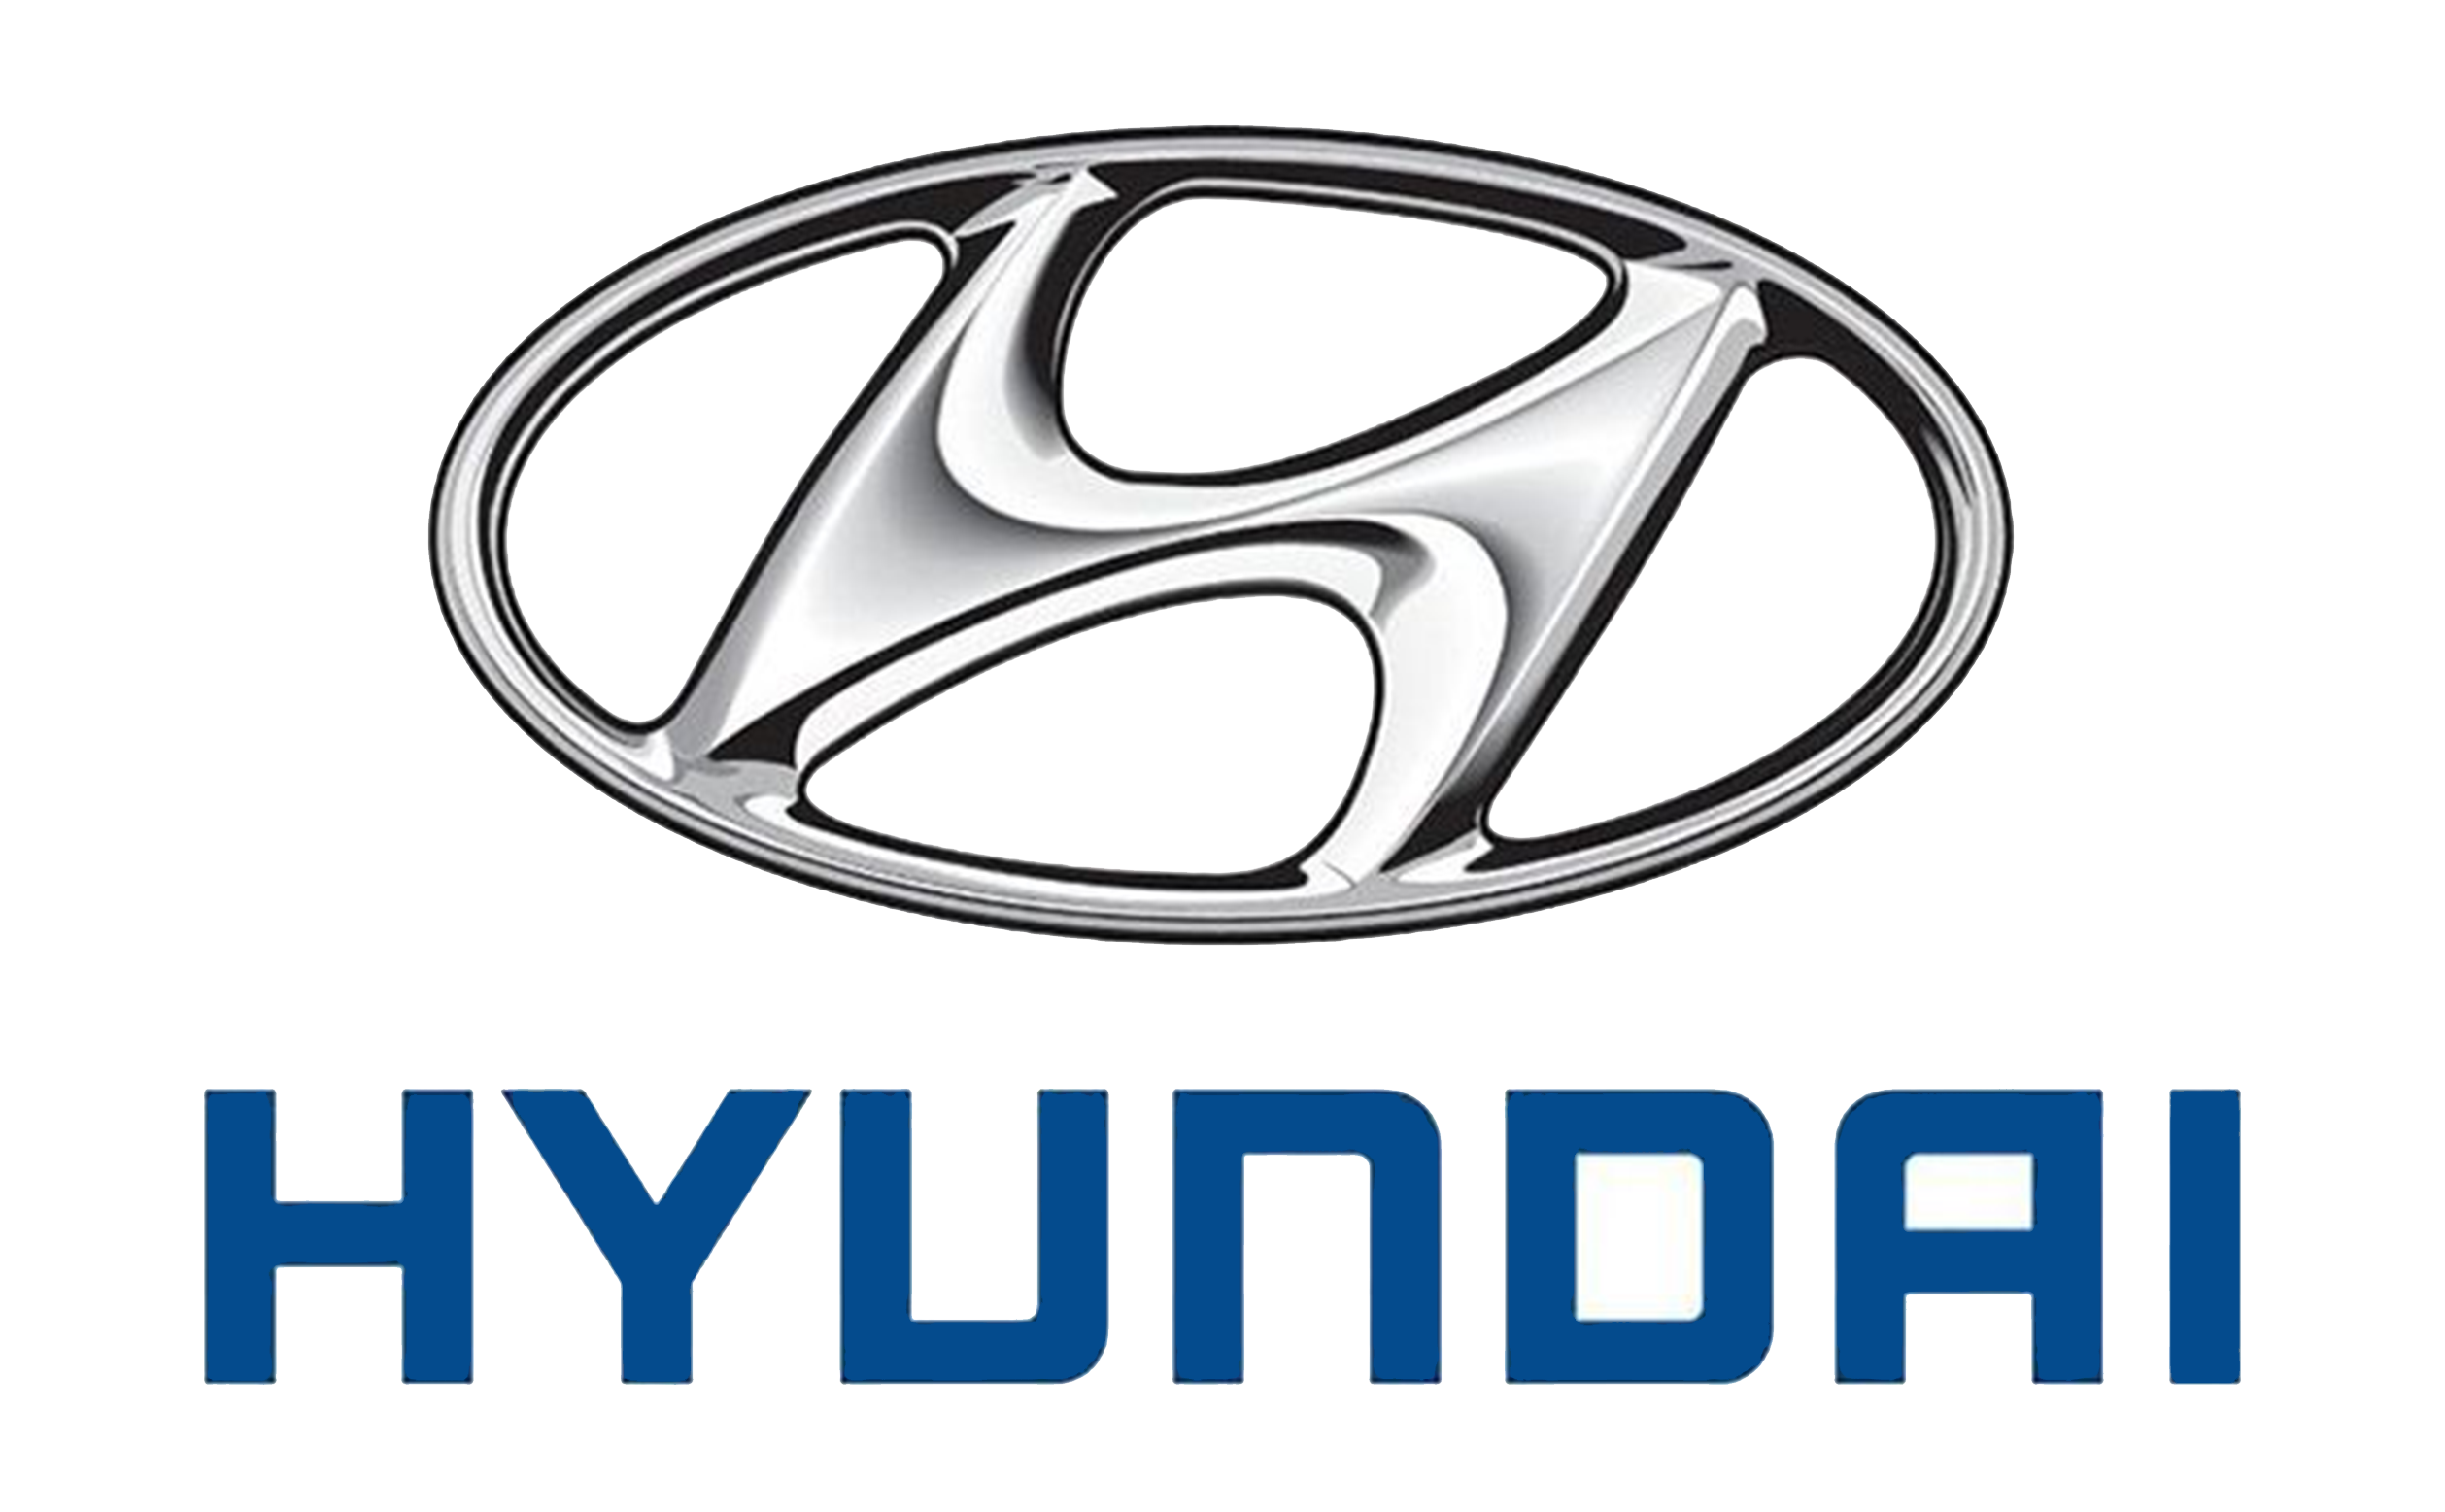 Ý nghĩa của tên và logo Hyundai